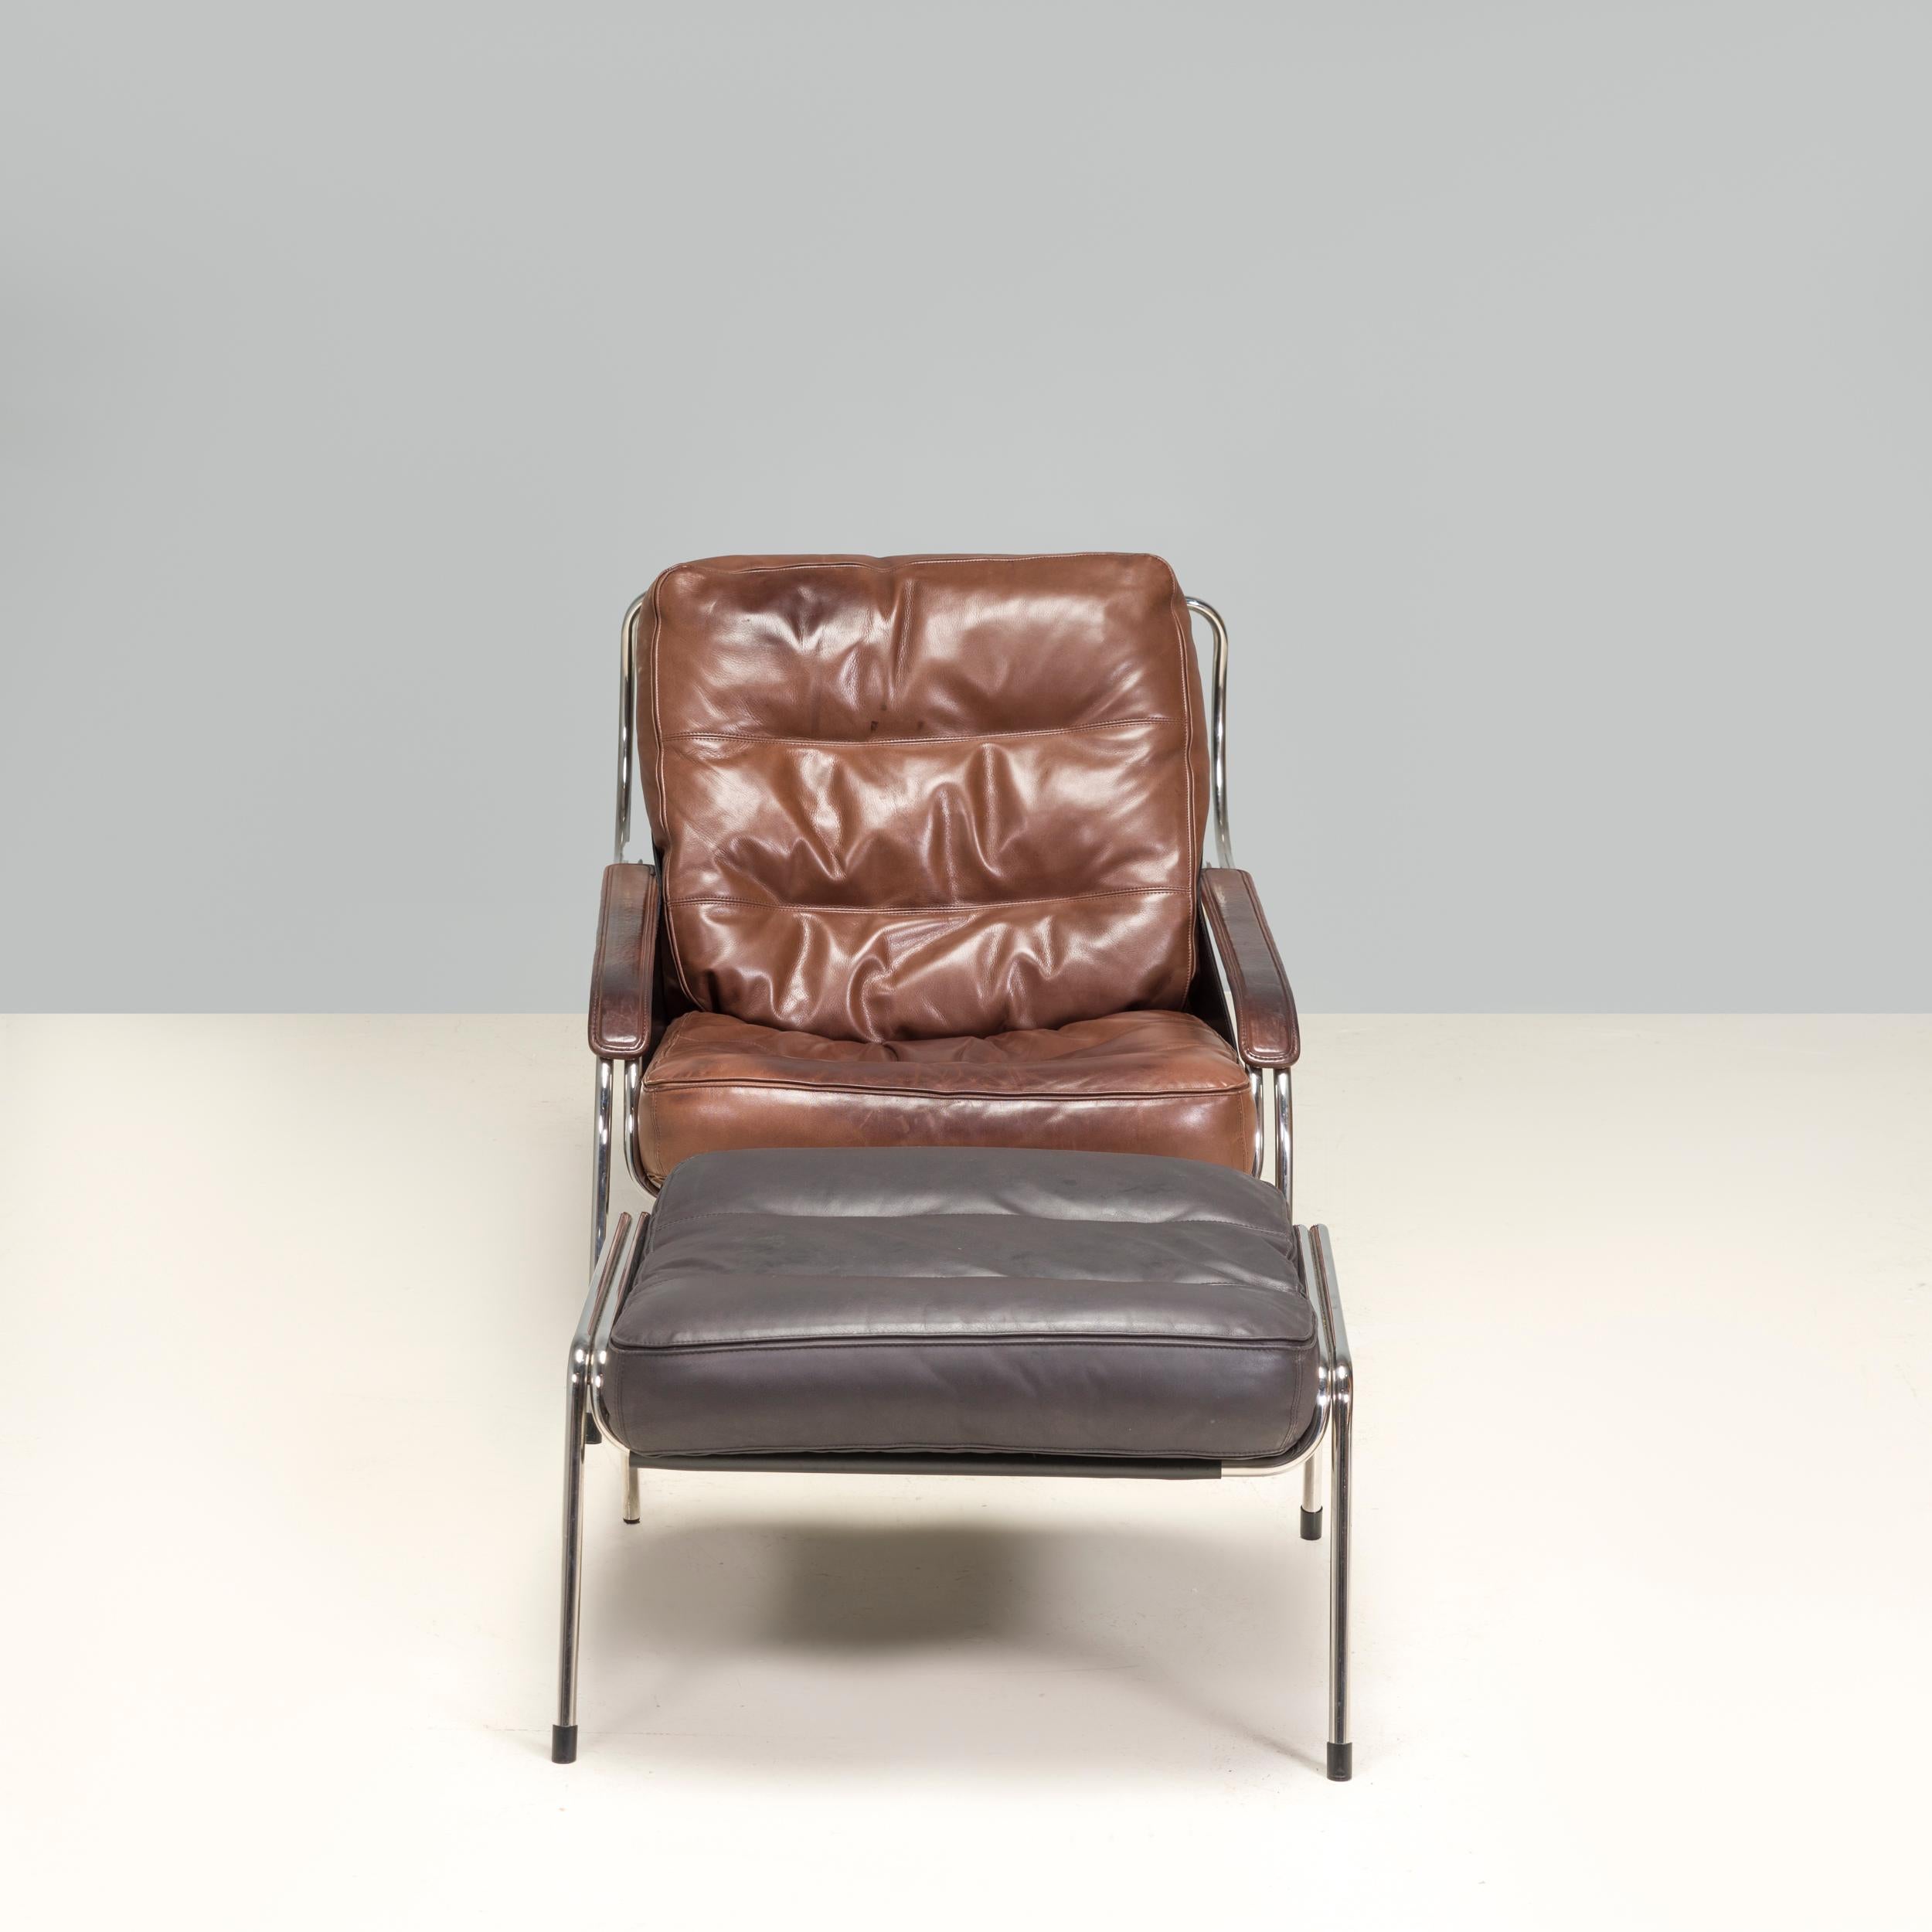 Conçue à l'origine par Marco Zanuso en 1947 pour un concours organisé par le Museum of Modern Art de New York, la chaise longue Maggiolina est devenue une icône du design et est fabriquée par Zanotta depuis 1972.

Exemple fantastique du design